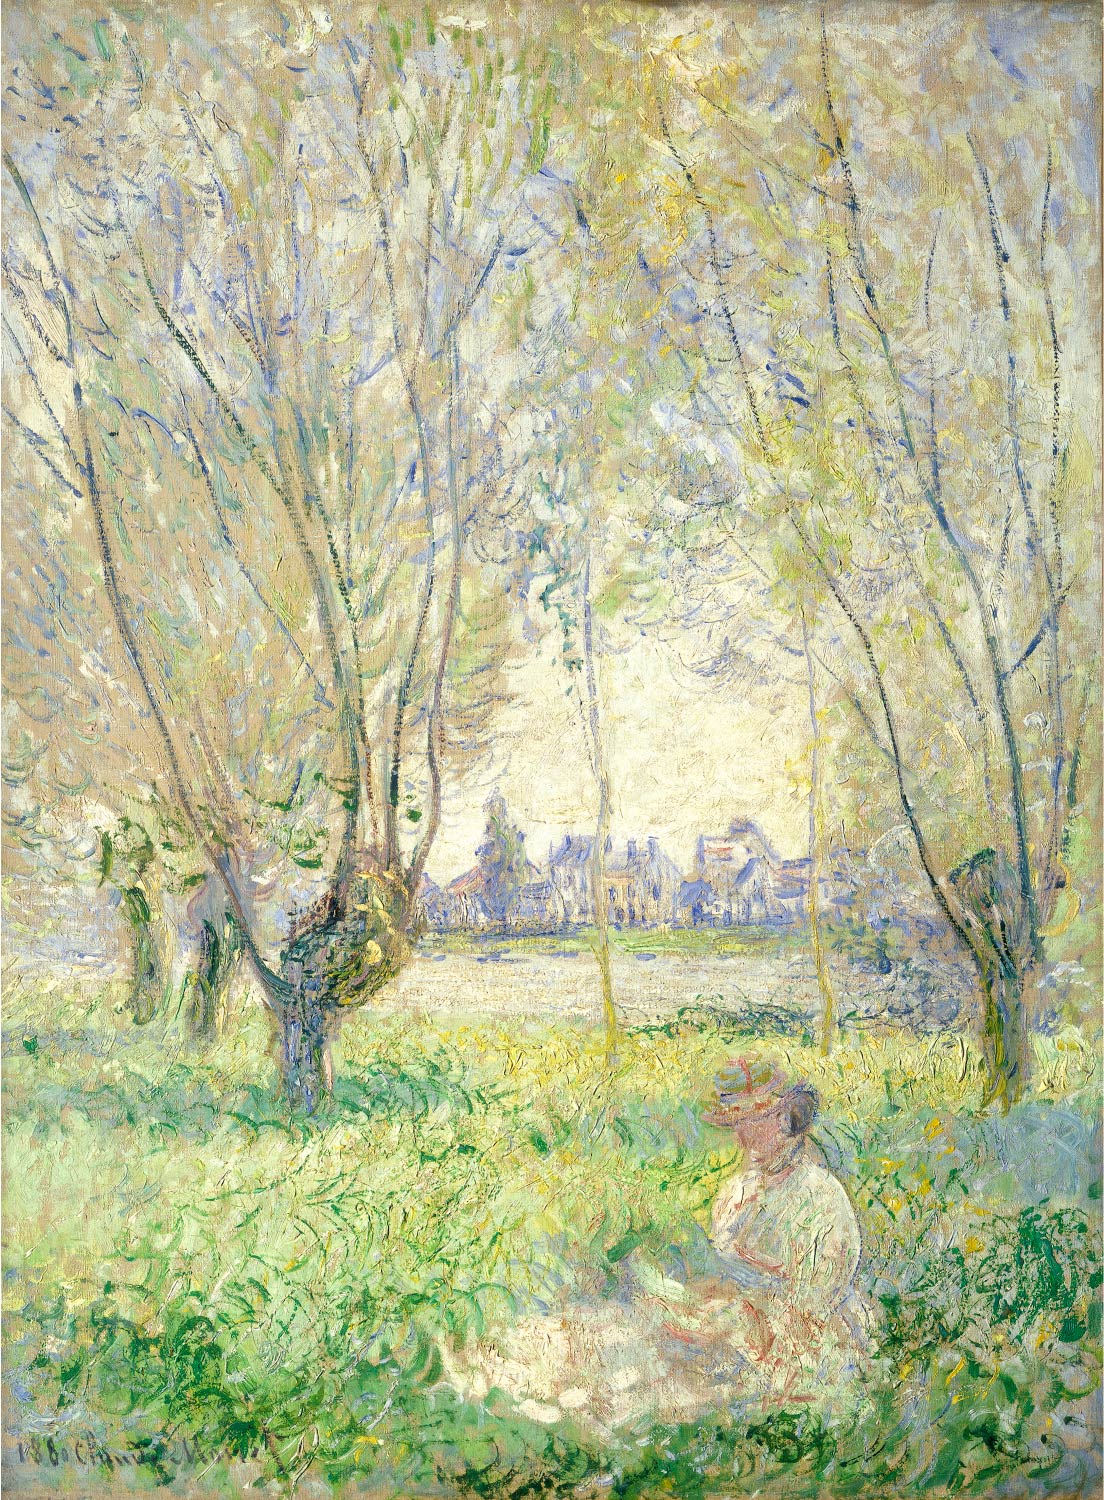 【無料壁紙】クロード・モネ「柳の下に座る女性 (1880)」 / Claude Monet_Woman Seated under the Willows (1880)